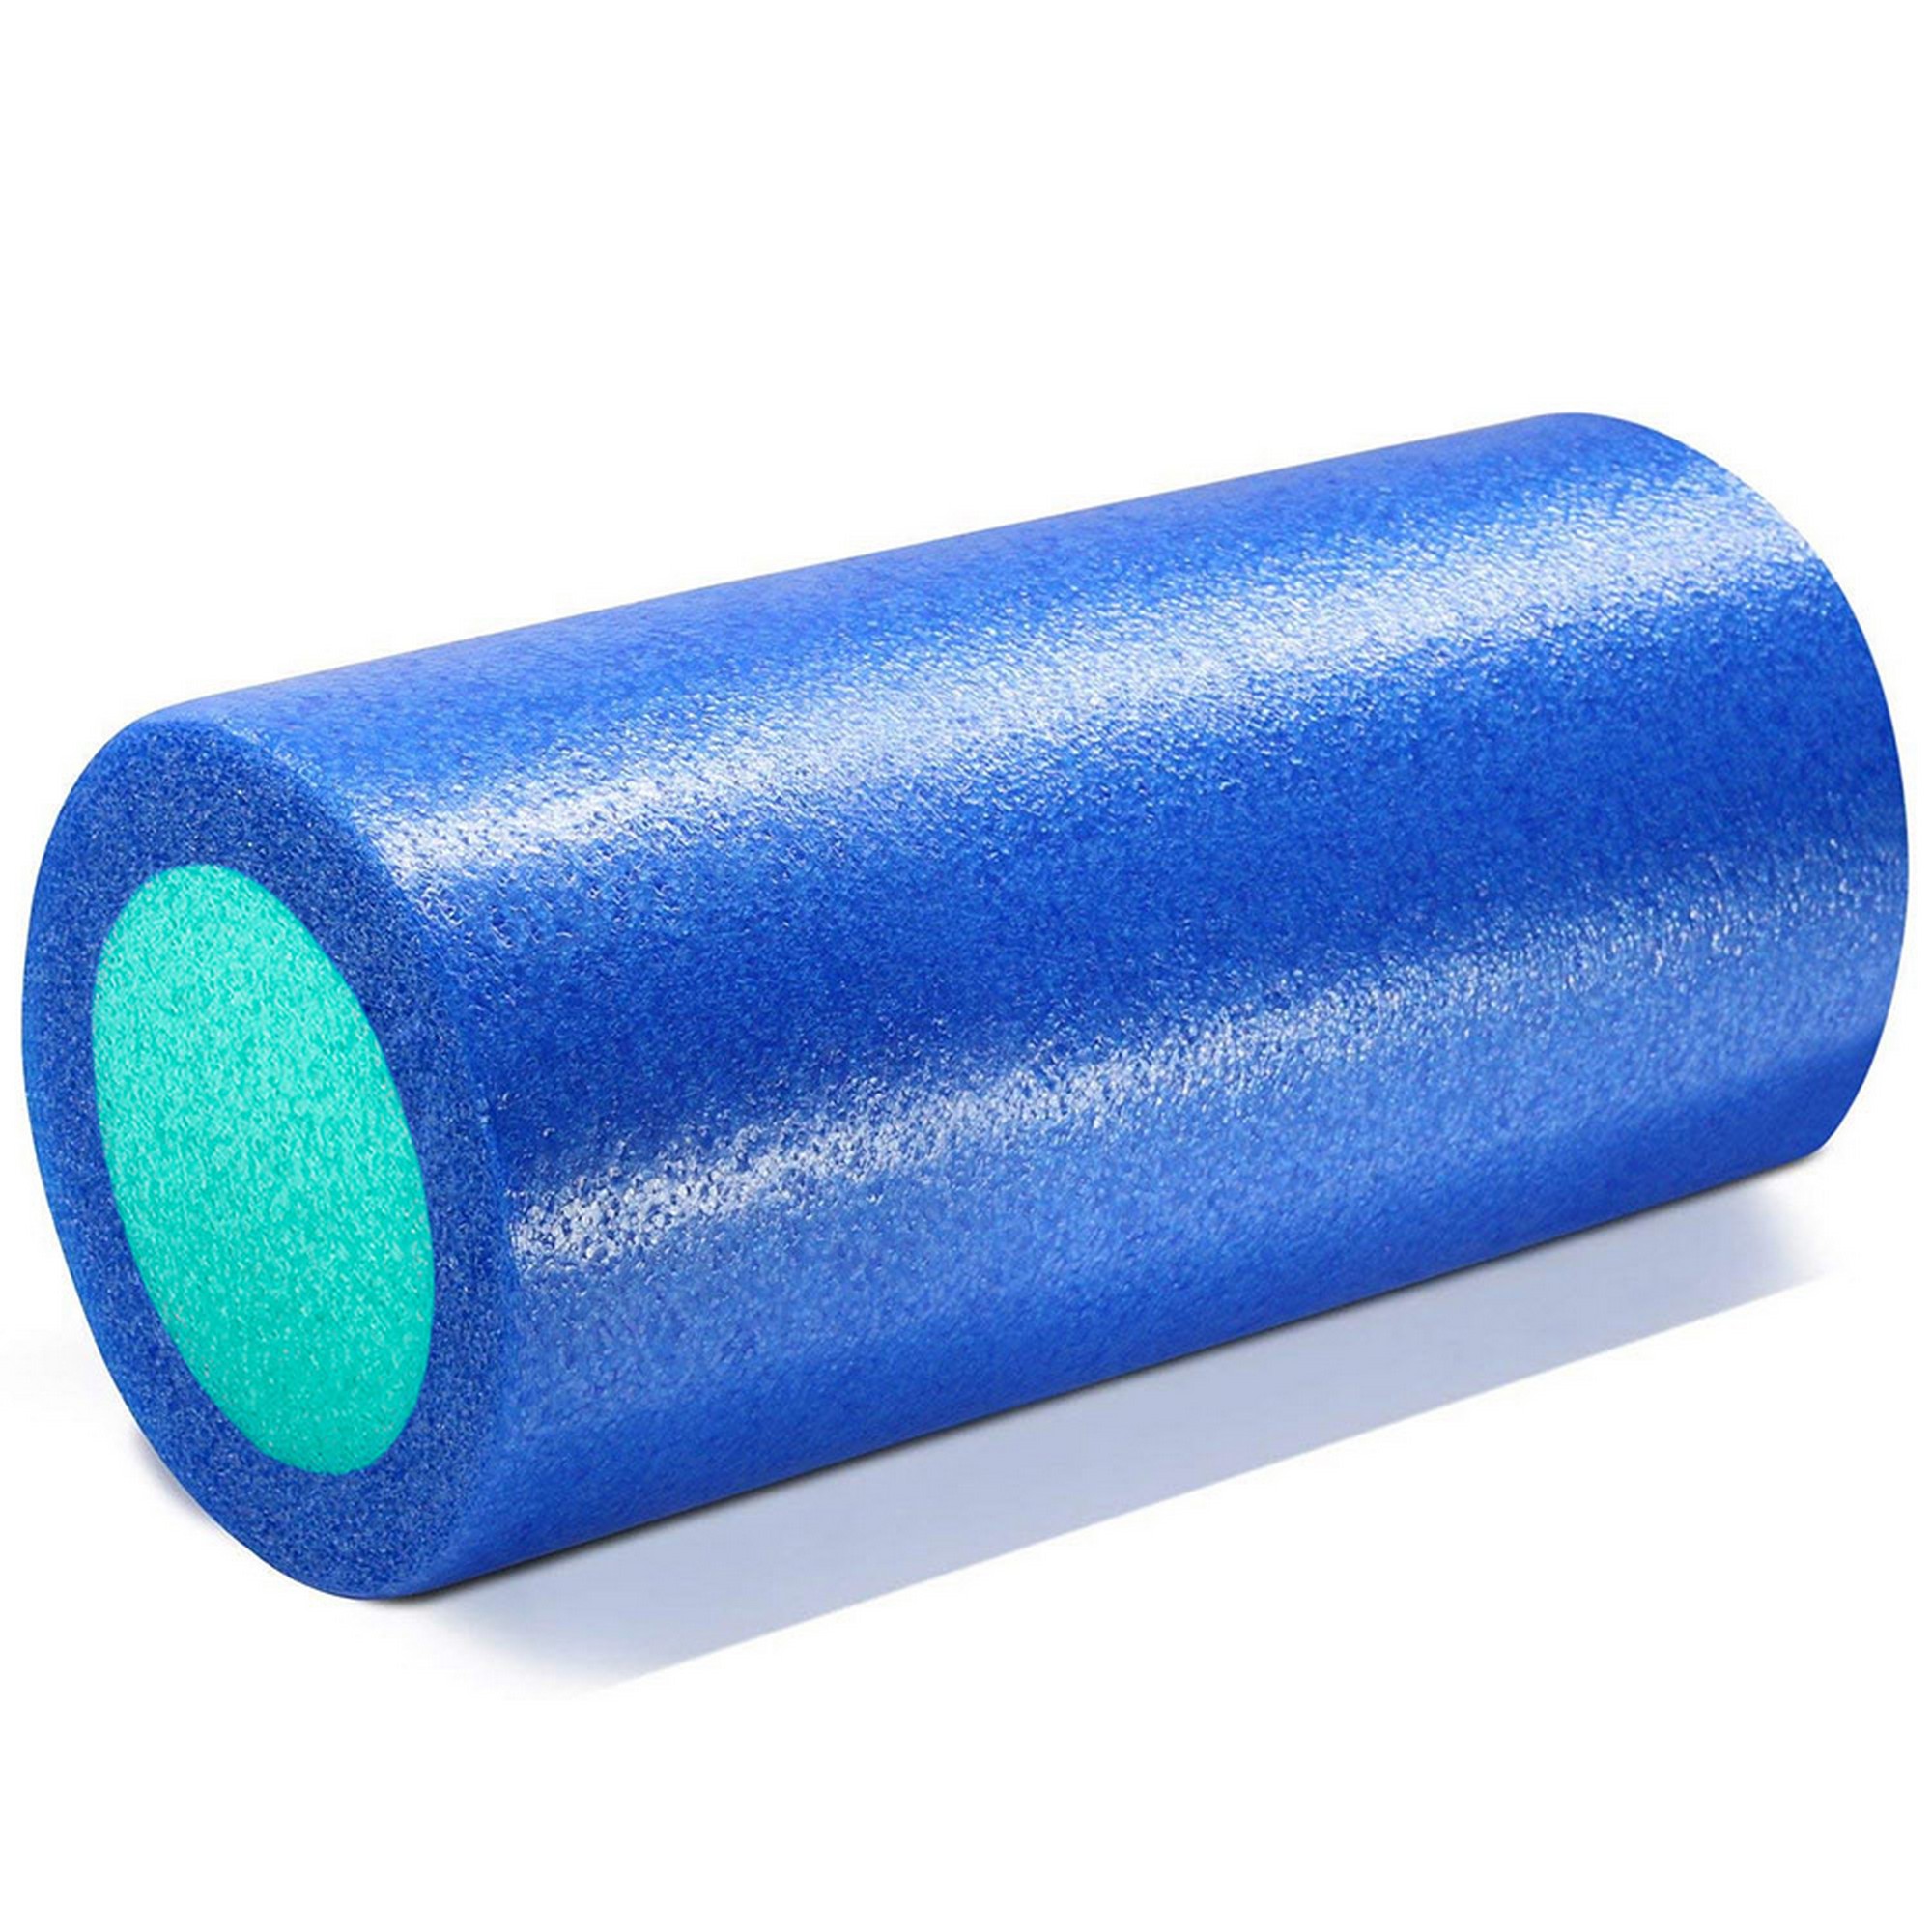 Ролик для йоги полнотелый 2-х цветный, 45х15x15см Sportex PEF45-B синий\зеленый 2000_2000